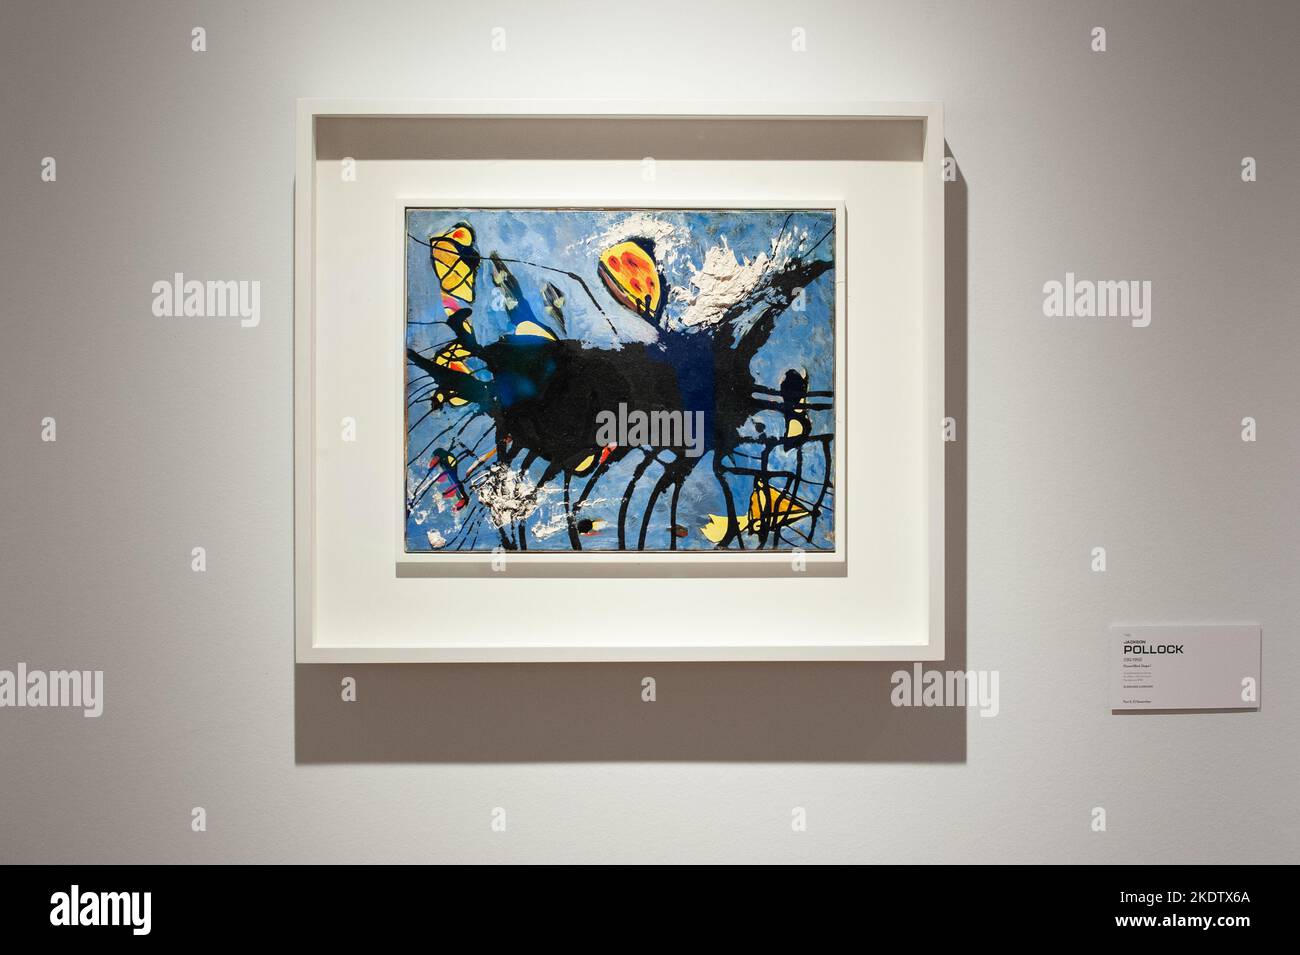 Jackson Pollock (1912-1956) a versé de l'huile noire de forme I et de l'émail sur toile 13 x 16 1/4 po. (33 x 41,3 cm) Peint vers 1950 estimation USD 1 500 000 - USD 2 000 000 exposé chez le visionnaire: La collection Paul G. Allen présentée aux Christie's New York Galleries au Rockefeller Center à New York, NY, le 8 novembre 2022. La vente aux enchères aura lieu du 9 au 10 novembre 2022 et a été évaluée à plus de $1 milliards. La collection du philanthrope Paul G. Allen, co-fondateur de Microsoft, comprend plus de 150 chefs-d'œuvre couvrant 500 ans d'histoire de l'art. Tous les revenus seront versés à la philanthropie. (Photo Banque D'Images